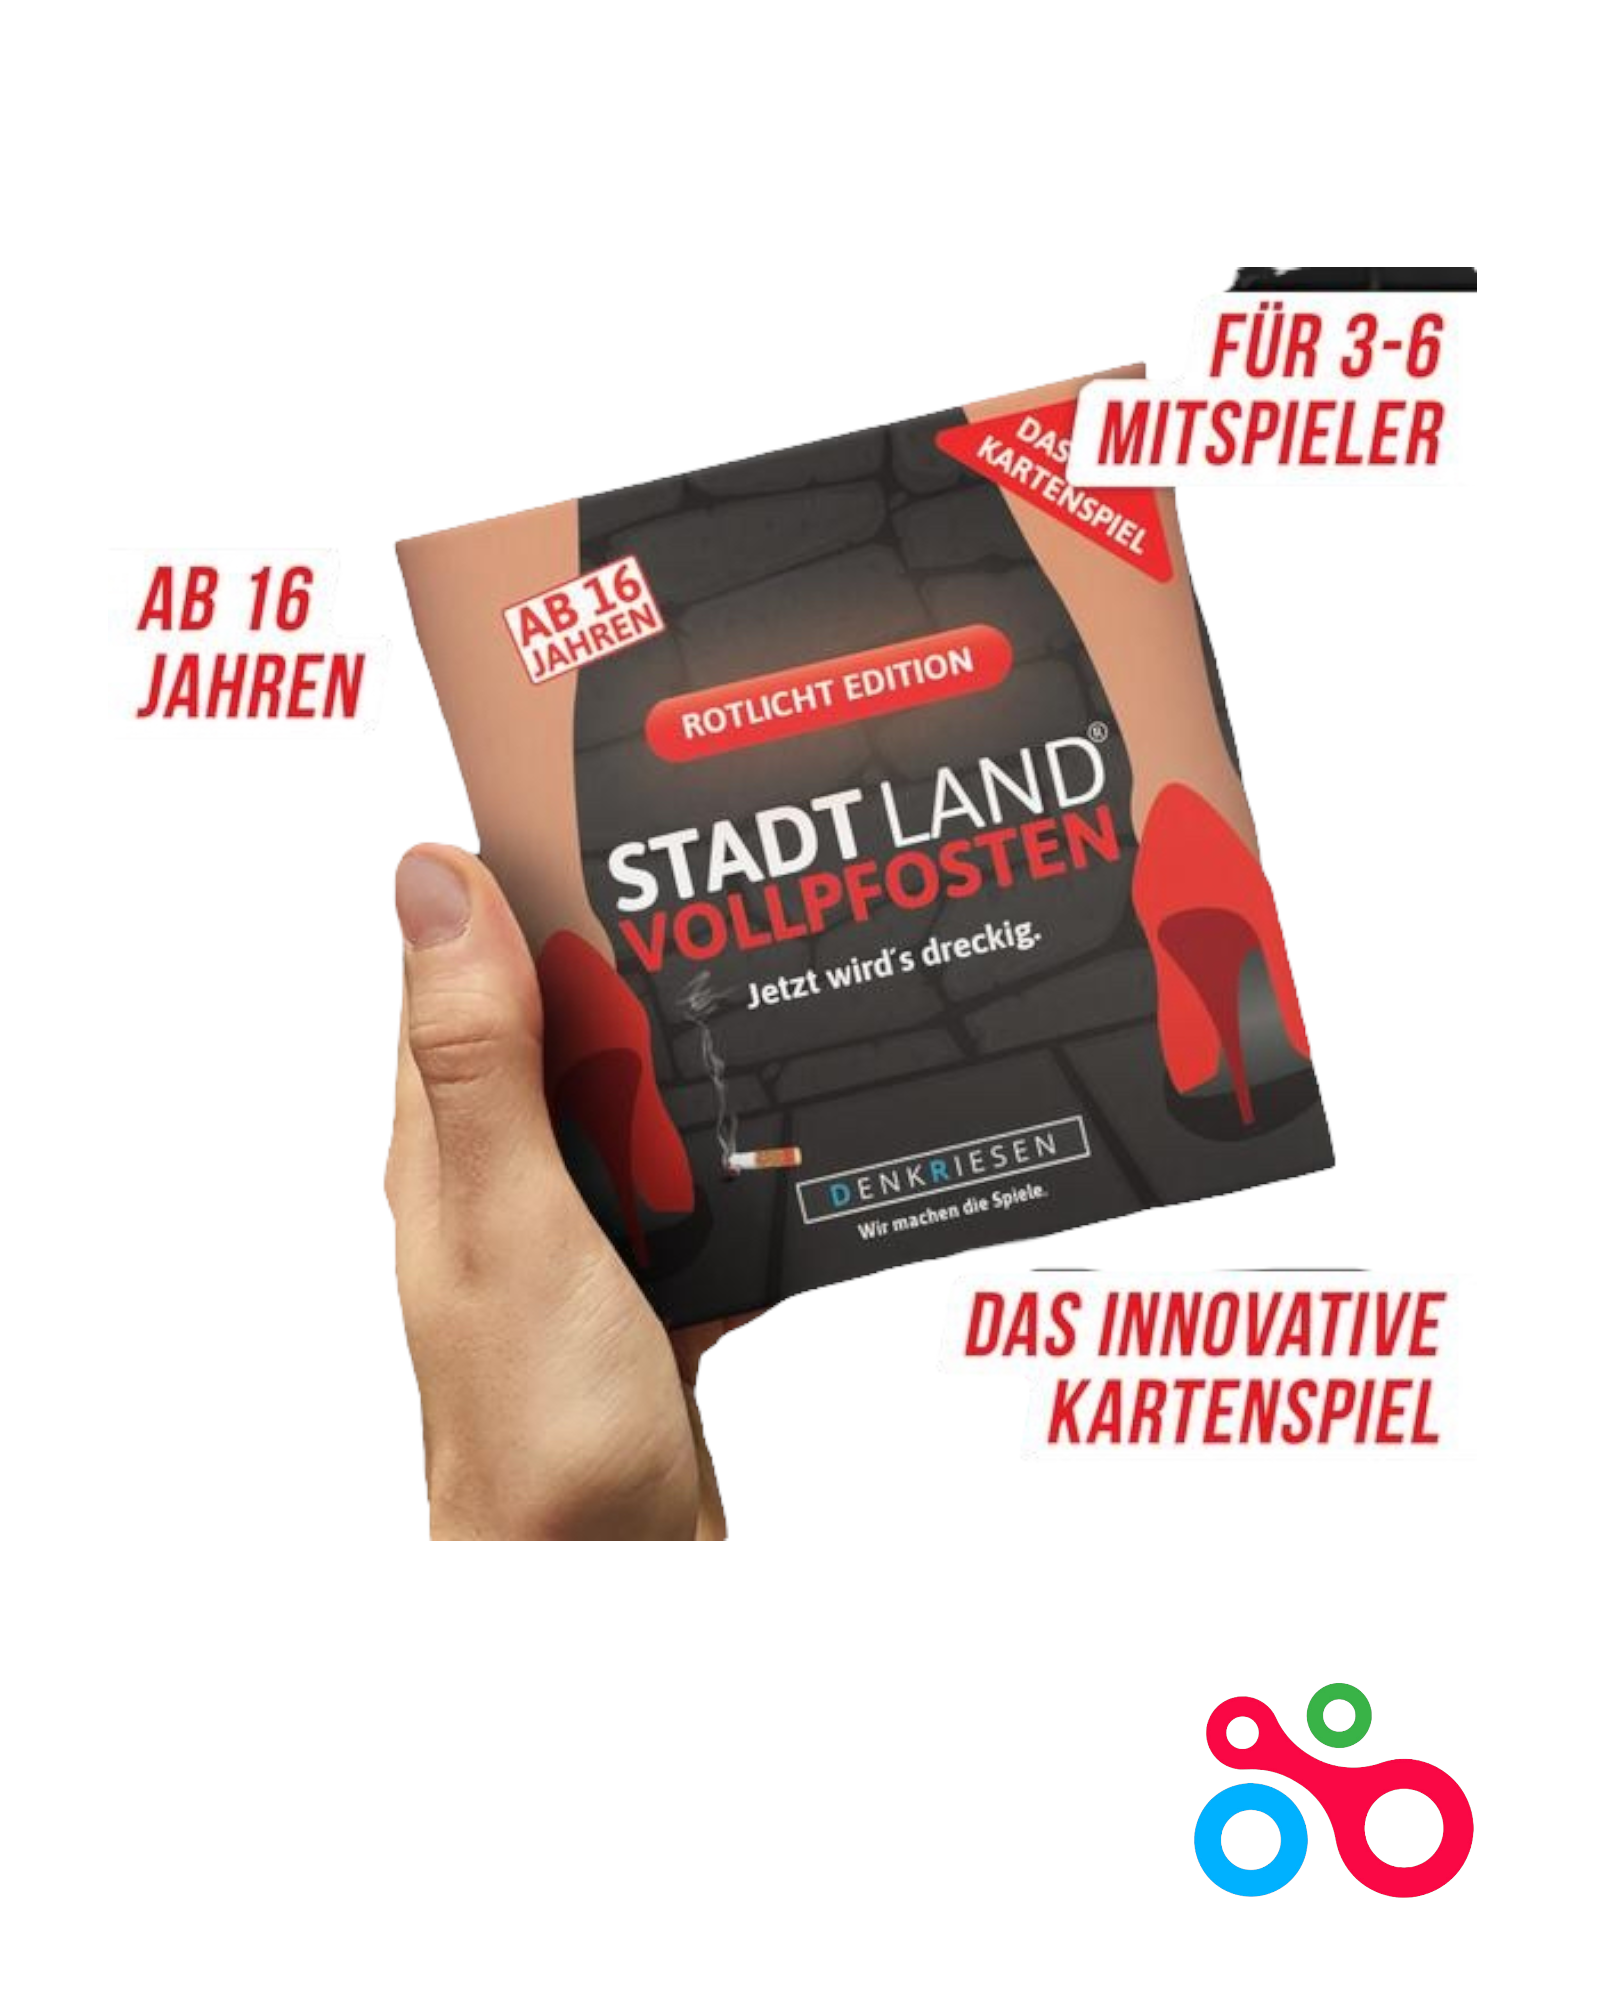 Stadt Land Vollpfosten® - Das Kartenspiel - Rotlicht Edition Vanellas Spielewelt